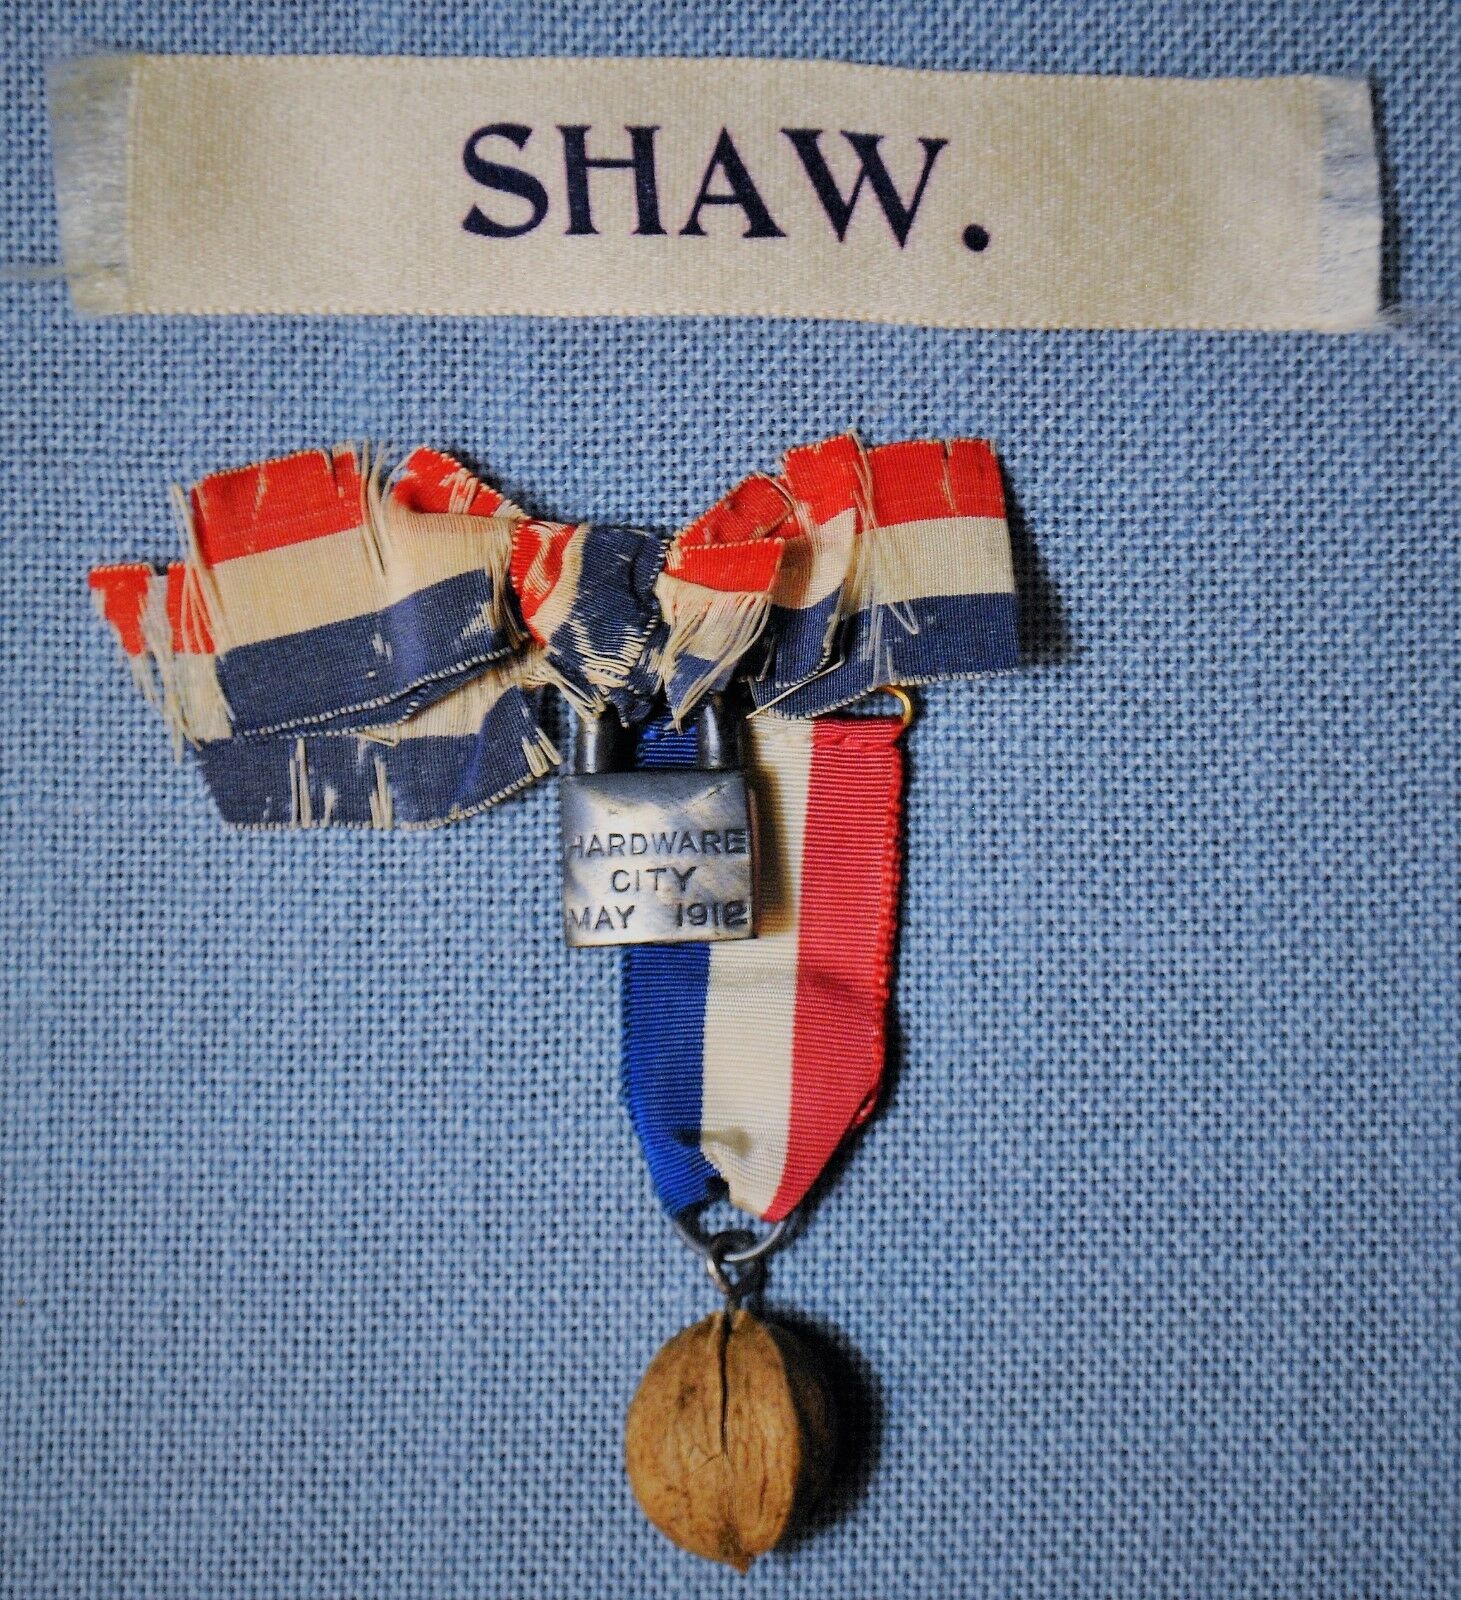 Two G.a.r. Ribbons - Hardware City May 1912 & Shaw. Ribbon